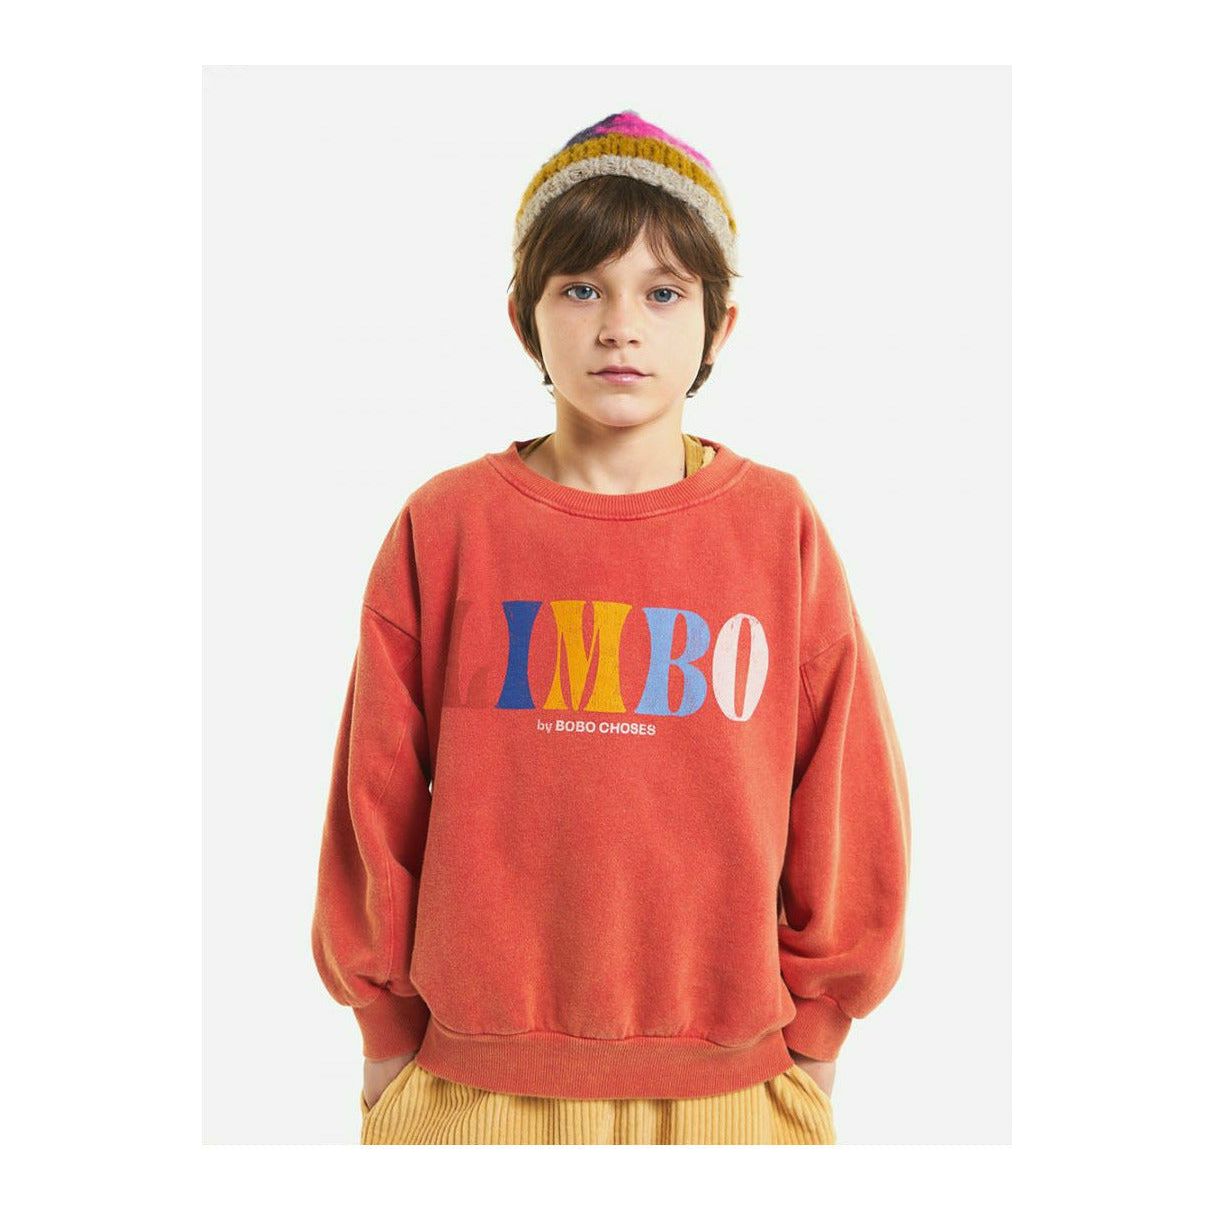 Limbo Sweatshirt